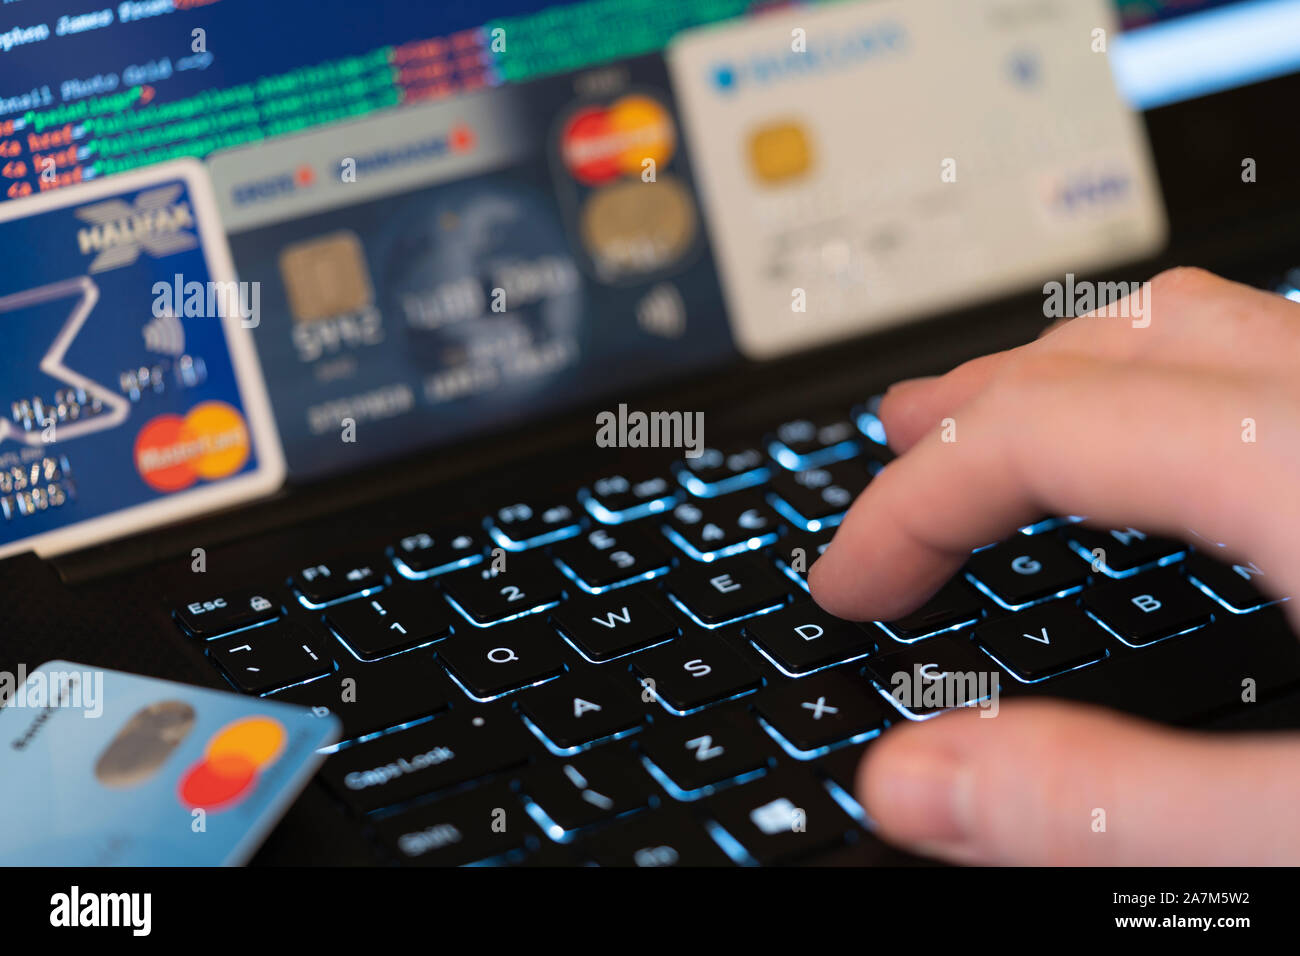 Eine Hand, die Eingabe über eine Tastatur mit Bildschirm und Kreditkarten im Hintergrund. Konzept: Betrug mit gestohlenen Kreditkarten online Zahlung zu machen Stockfoto